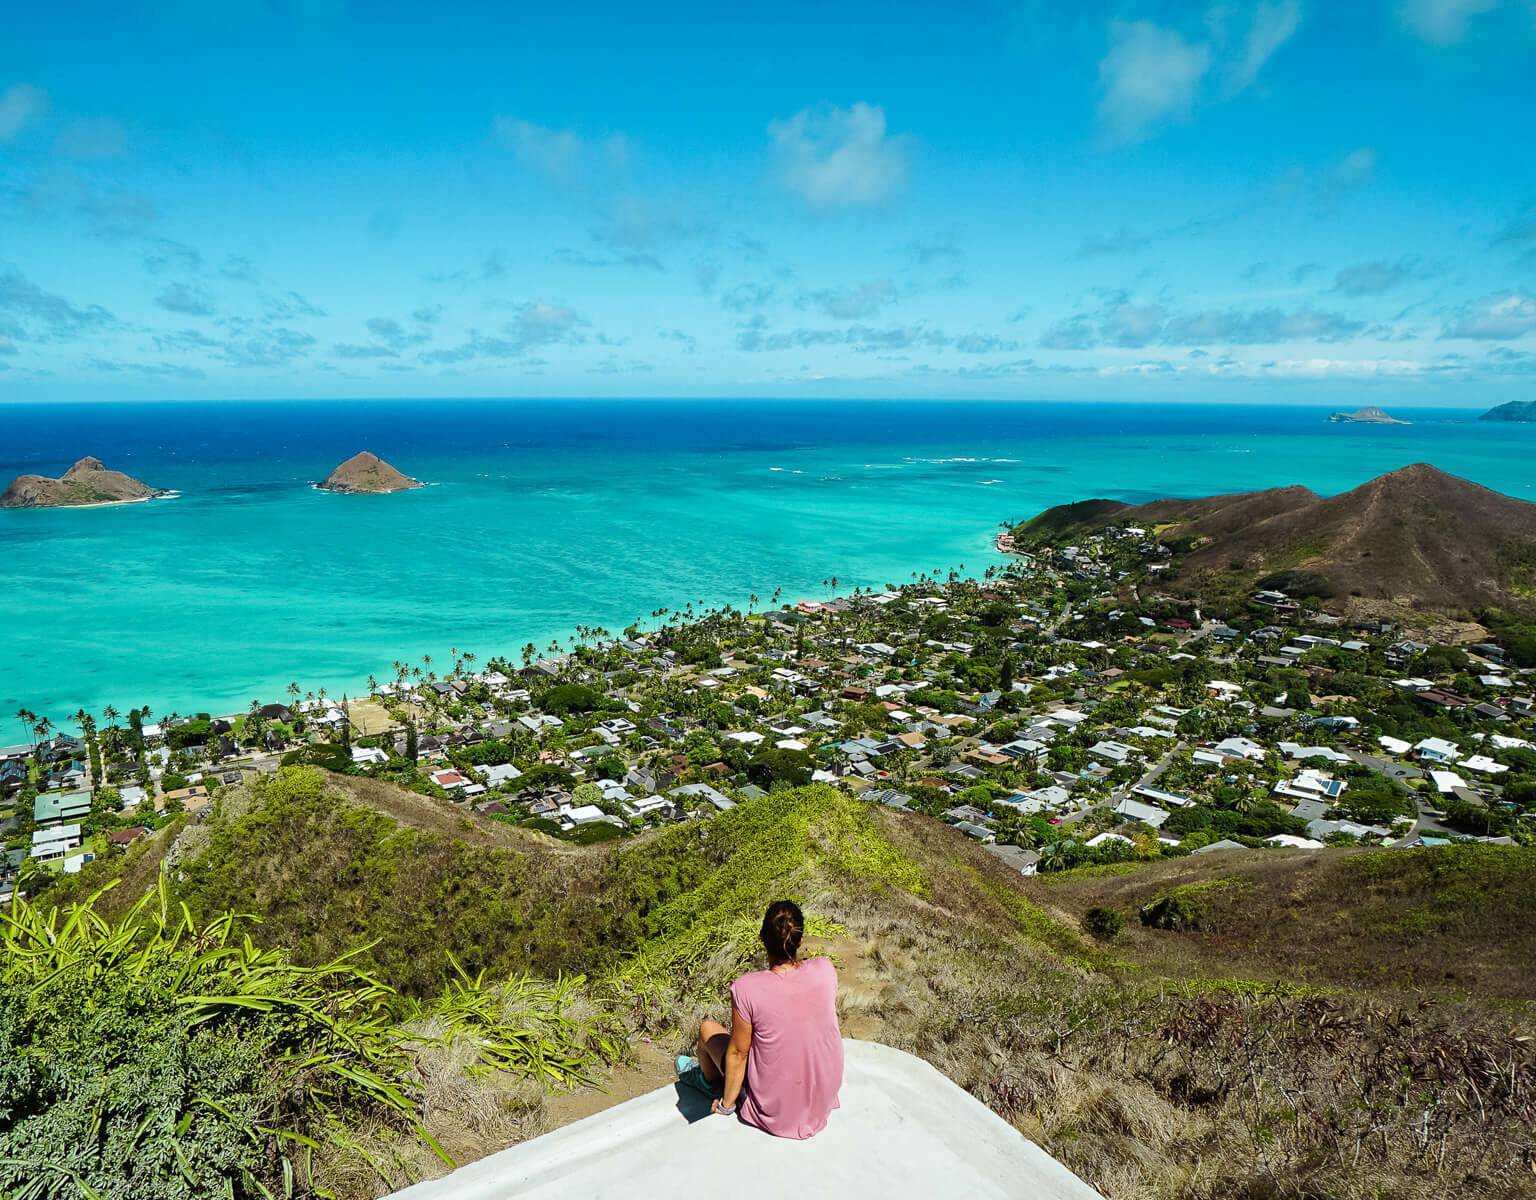 Ein sagenhaften Rundumblick über Hawaii und dem Lanikai Beach erwartet einem auf dem Emde des Pillbox Hike, kleine Hütten zieren in grüner Vegetation die Landschaft und das azurfarbene Meer verschmilzt am Horizont mit dem Himmel.